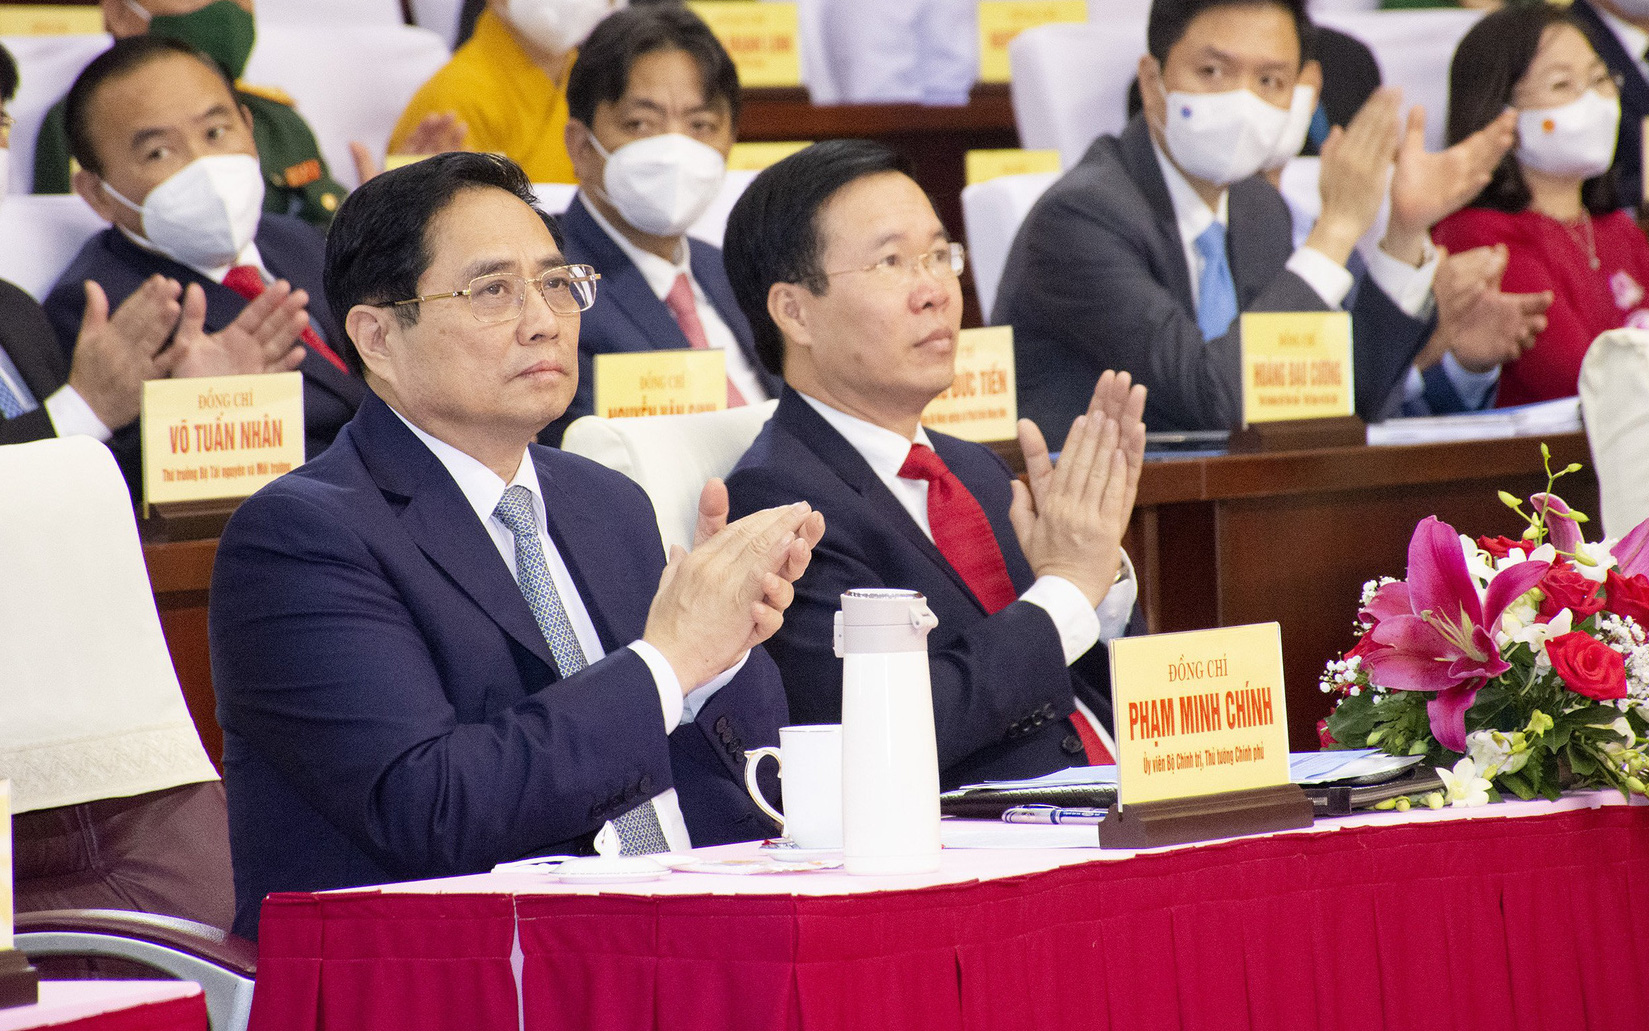 Ảnh: Thủ tướng Chính phủ Phạm Minh Chính dự lễ kỷ niệm 30 năm thành lập Bà Rịa - Vũng Tàu